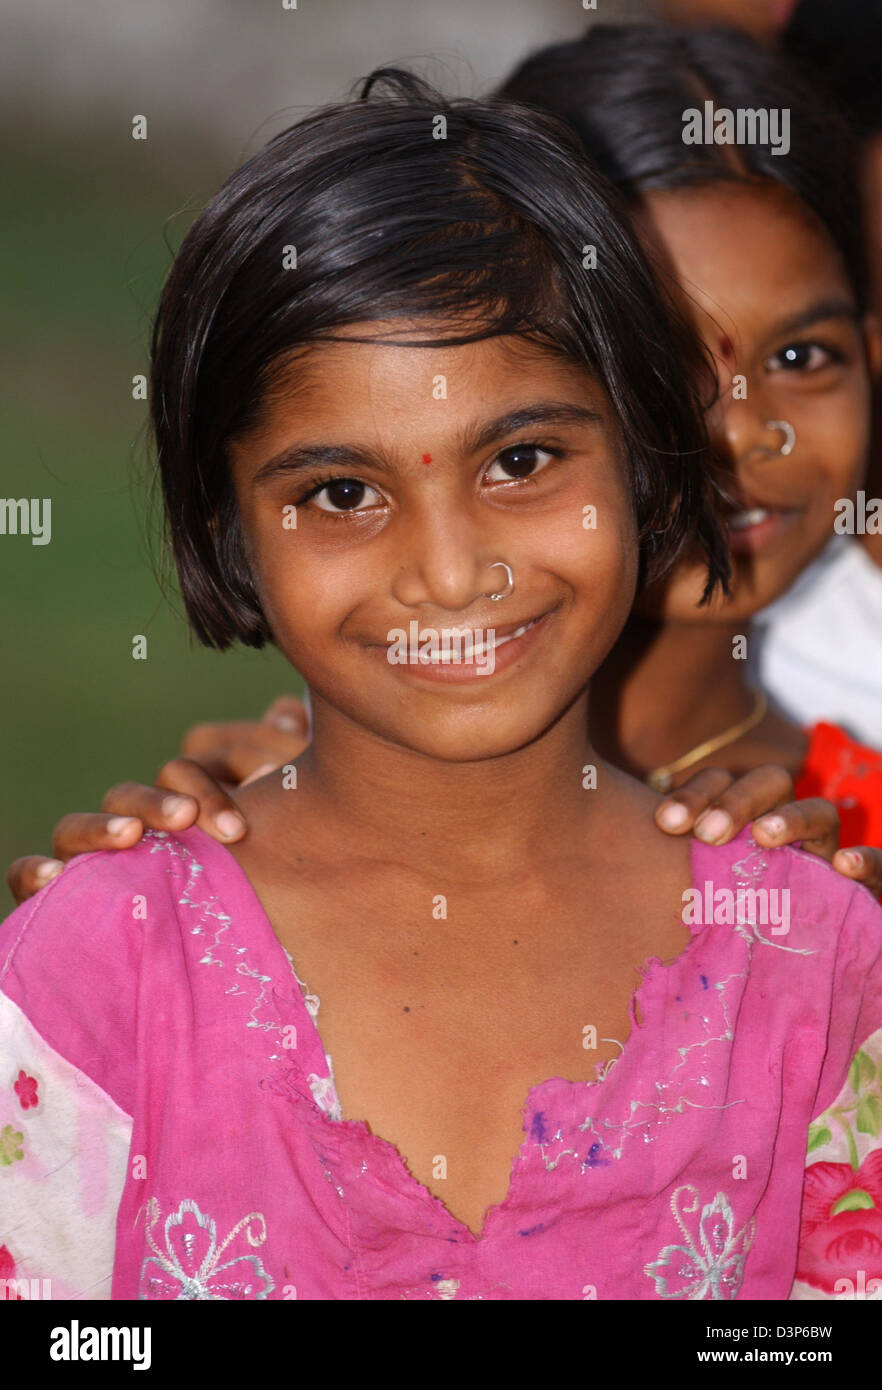 (Dpa-Datei) - das Bild zeigt ein junges Mädchen in einem abgelegenen Dorf in der Nähe von Chandrapur, Indien, 2. Juli 2006. Foto: Wolfgang Langenstrassen Stockfoto